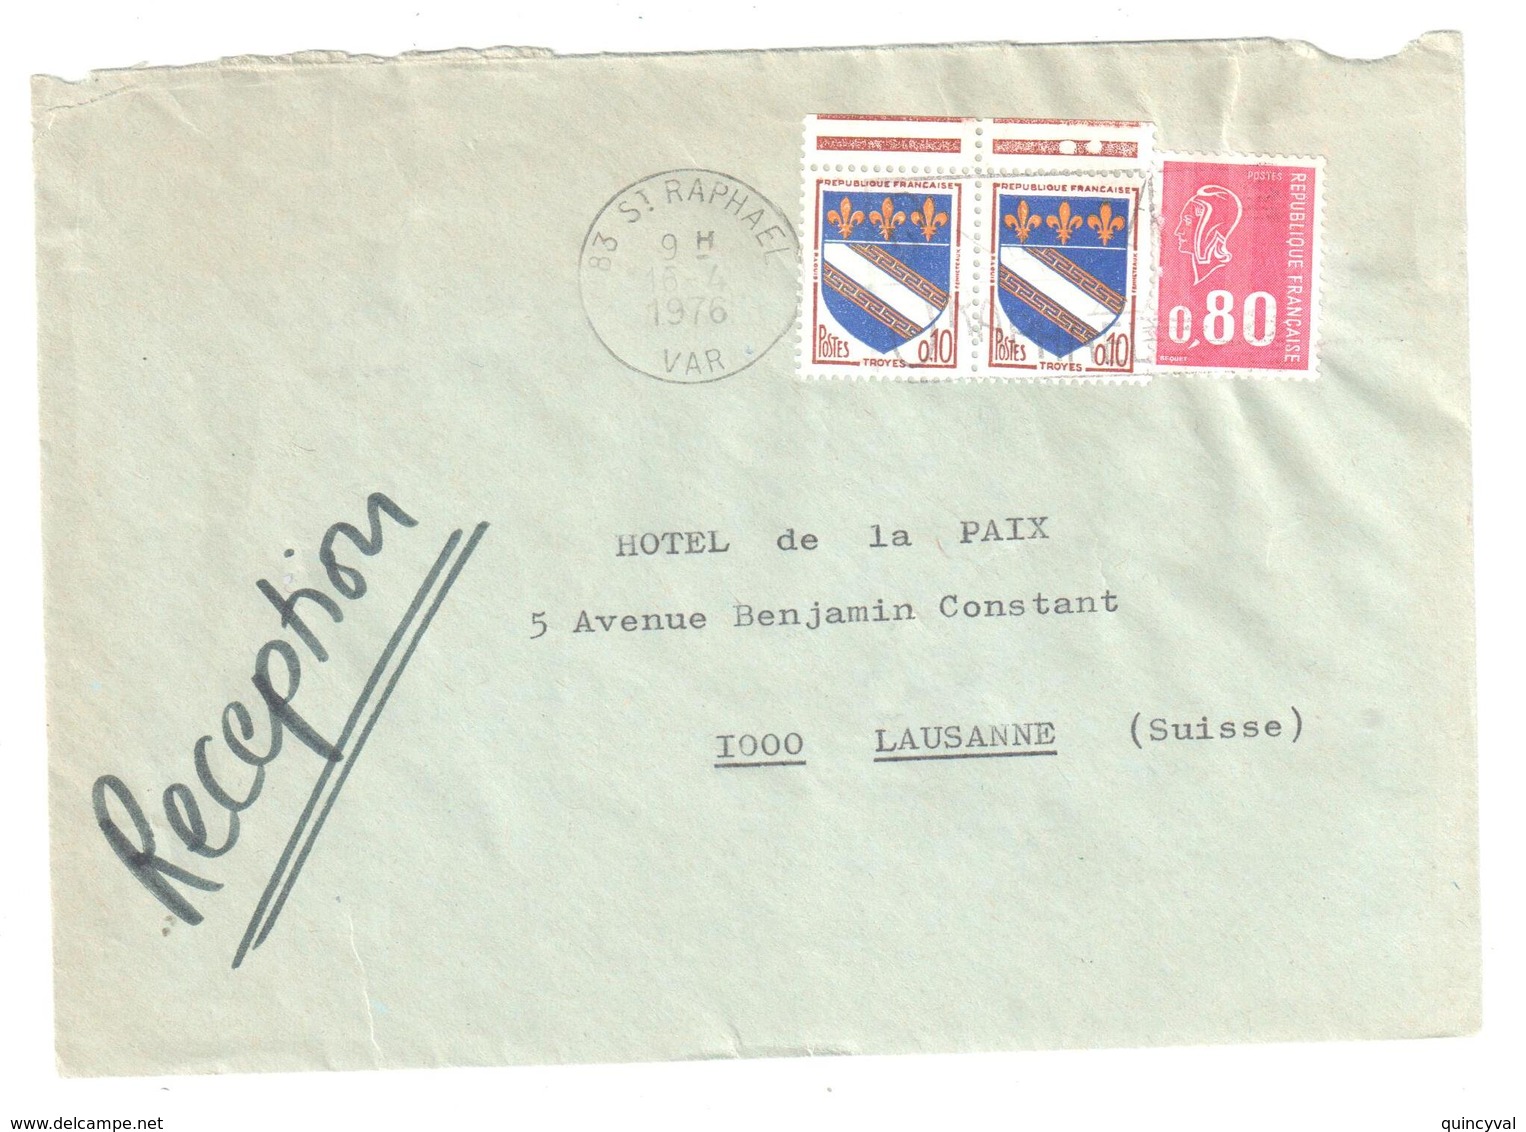 St RAPHAEL Var Lettre Destination Suisse Tarif Particulier Du 1 1 1976 80C Bequet 10c Troyes Yv 1353 1816 Dest Lausanne - Cartas & Documentos